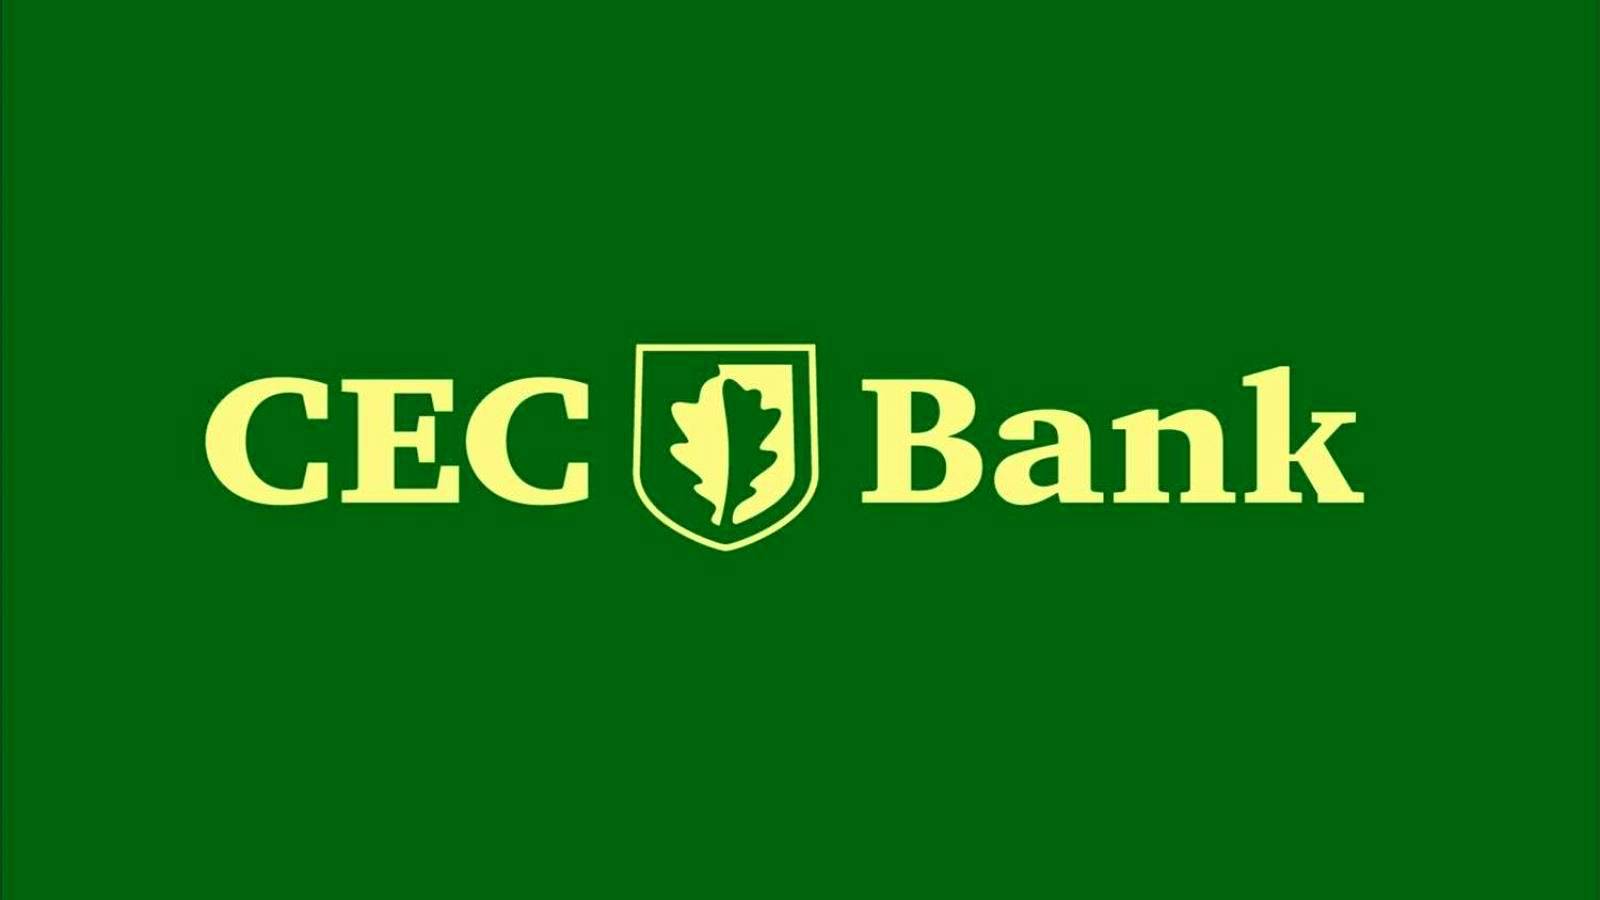 Apertura del banco CEC